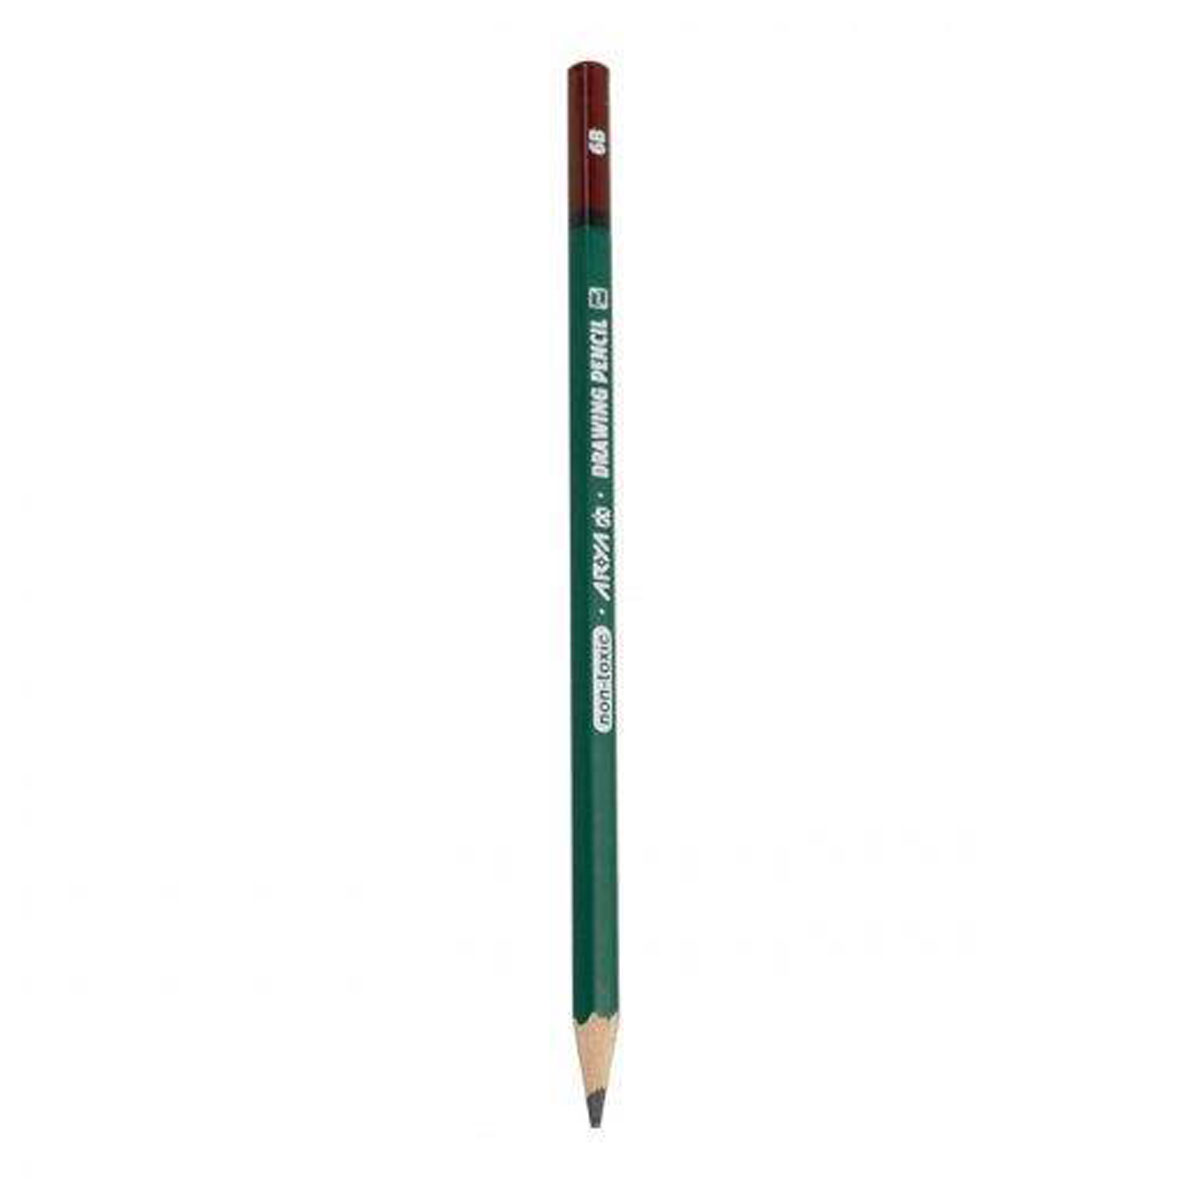 مداد طراحی آریا مدل 3505